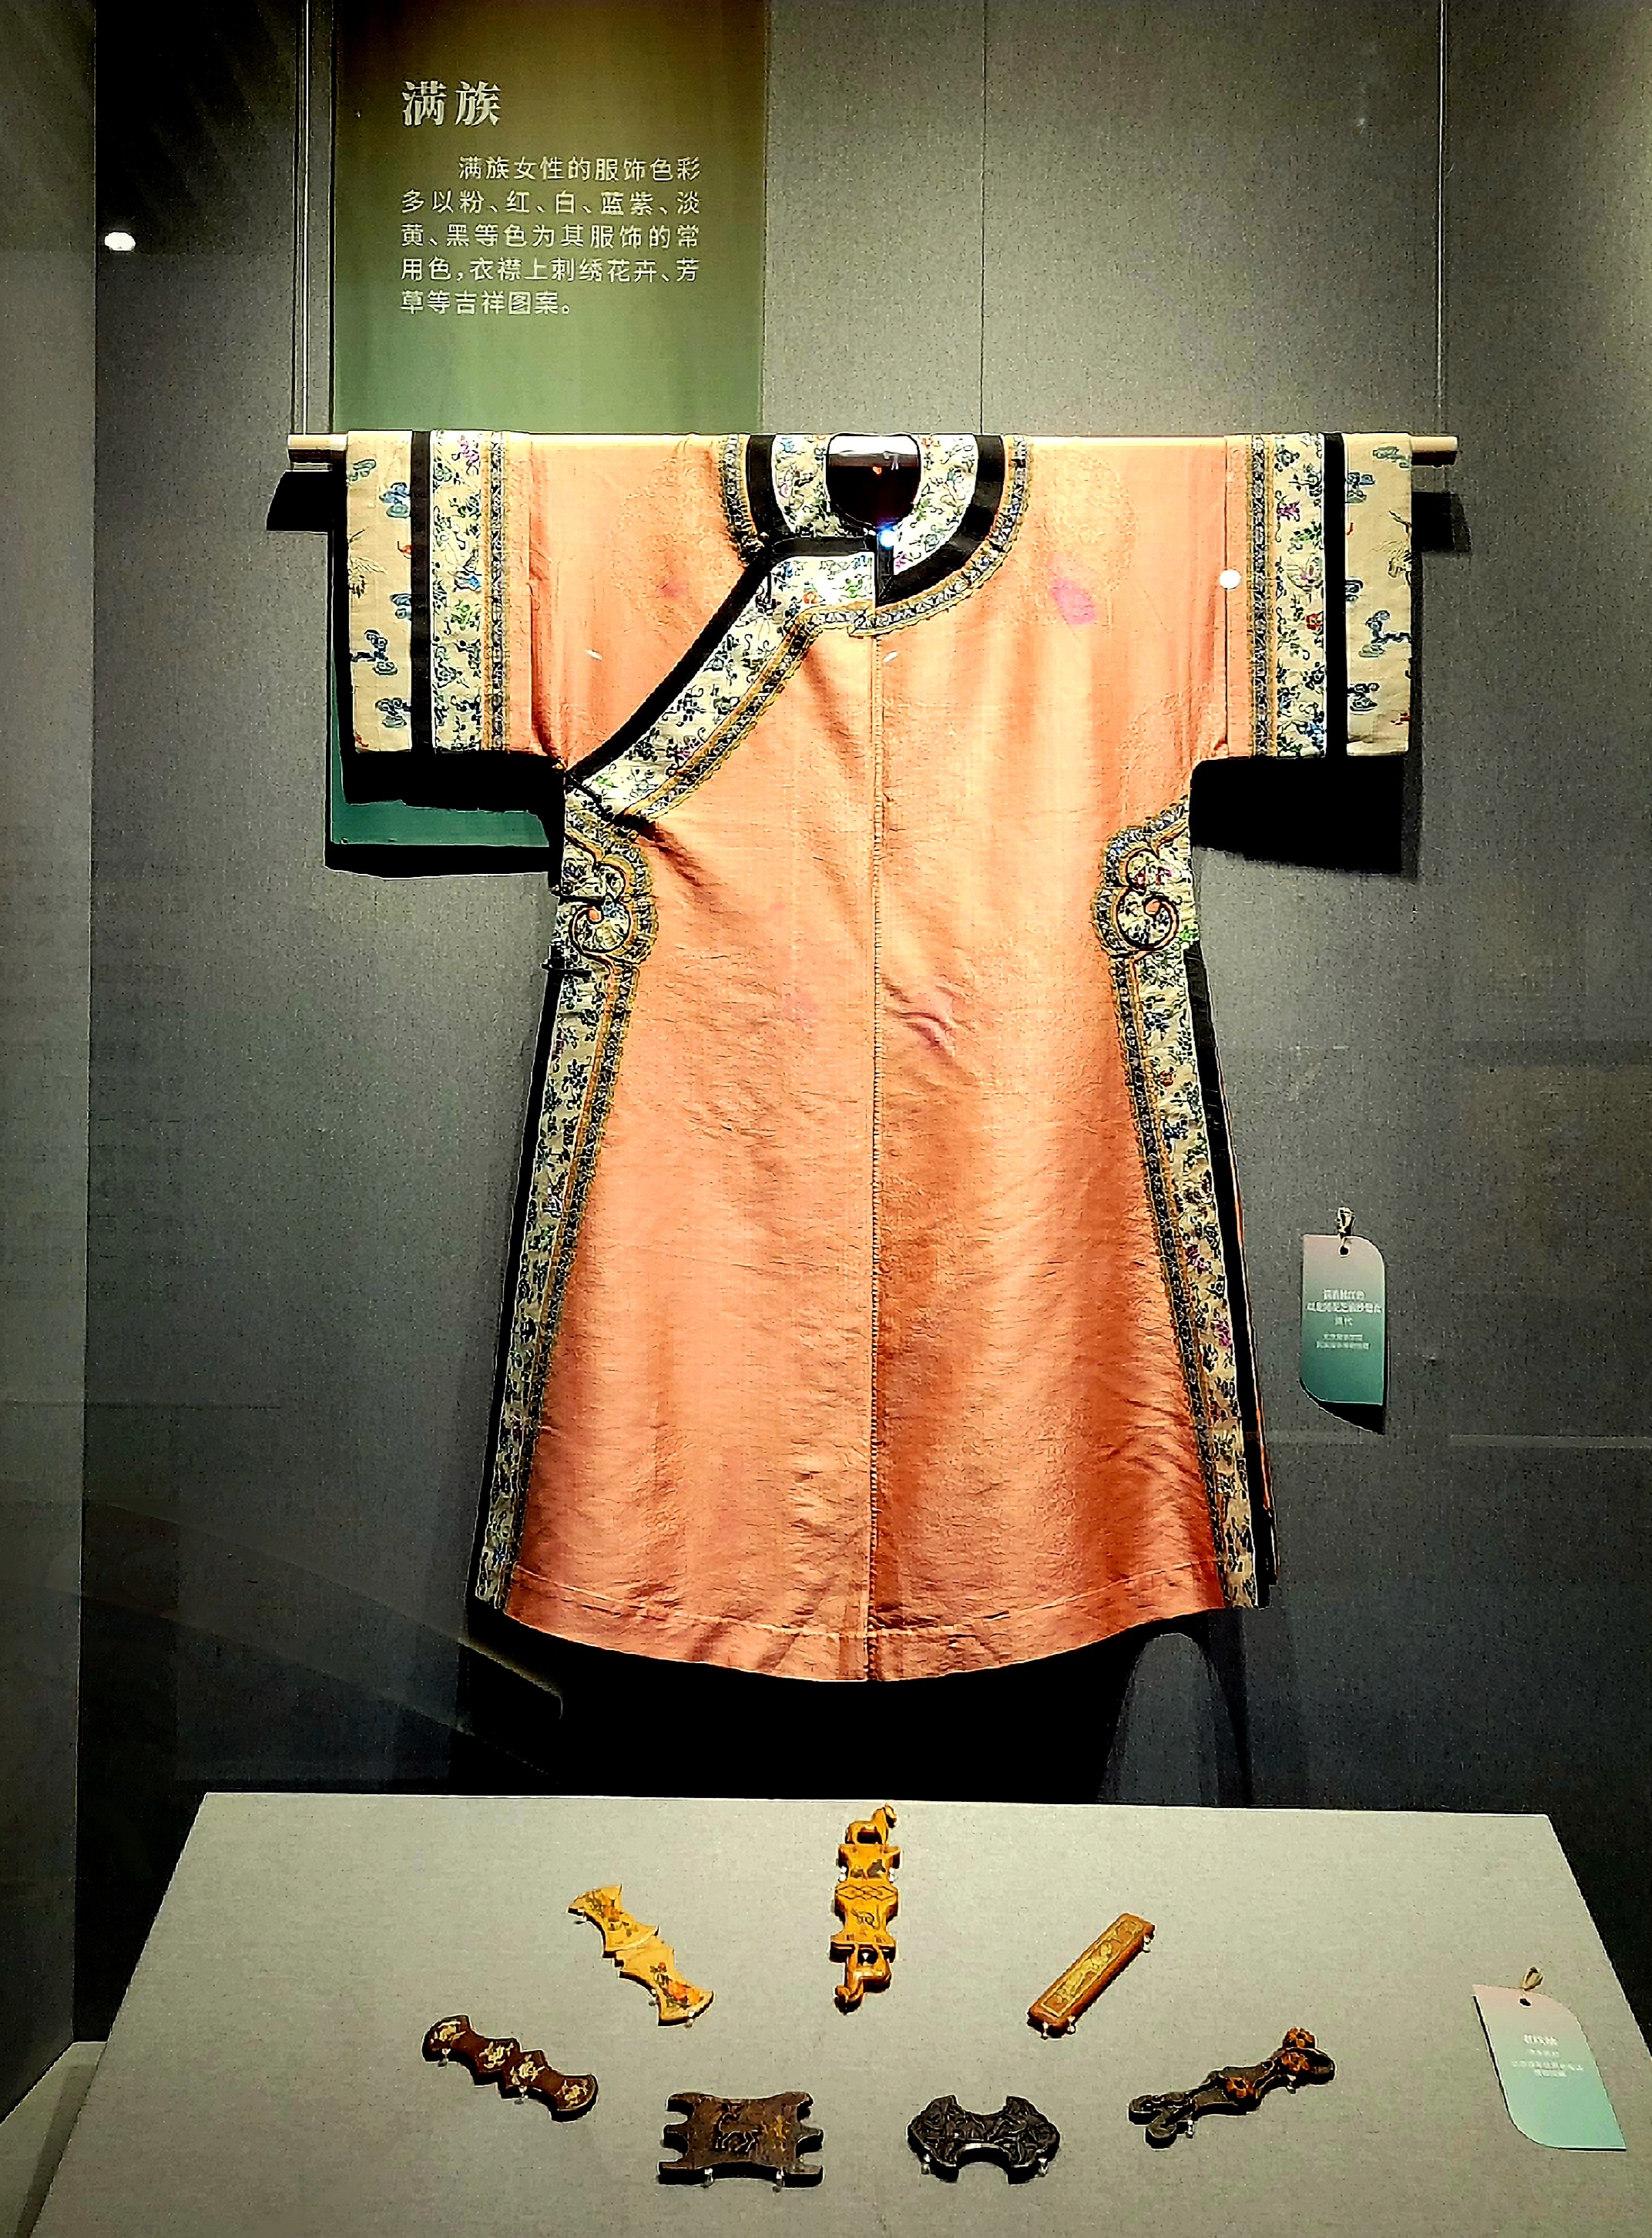 Ένα σετ ενδυμασίας των Μαντσού από την έκθεση με τις φορεσιές των εθνοτήτων της Κίνας (中国各民族的服饰:Zhōngguó gè mínzú de fúshì) από το Μουσείο Κινεζικών Κήπων και Τοπίων (Φωτογραφία Εύα Παπαζή)